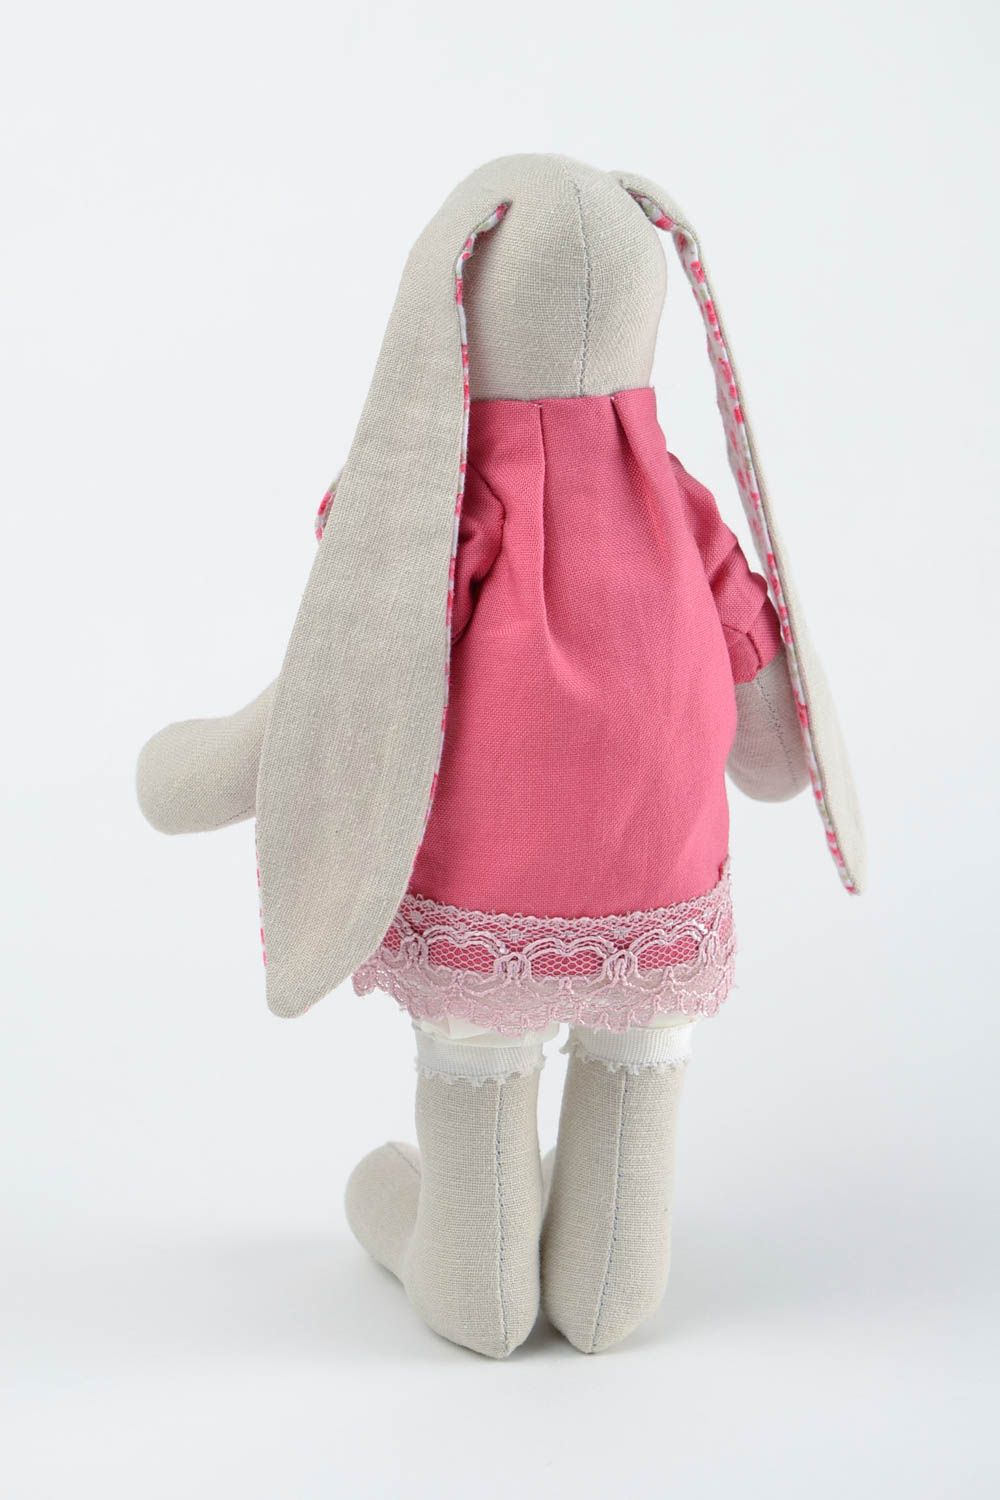 Игрушка заяц ручной работы в розовом платье авторская игрушка стильный подарок фото 5